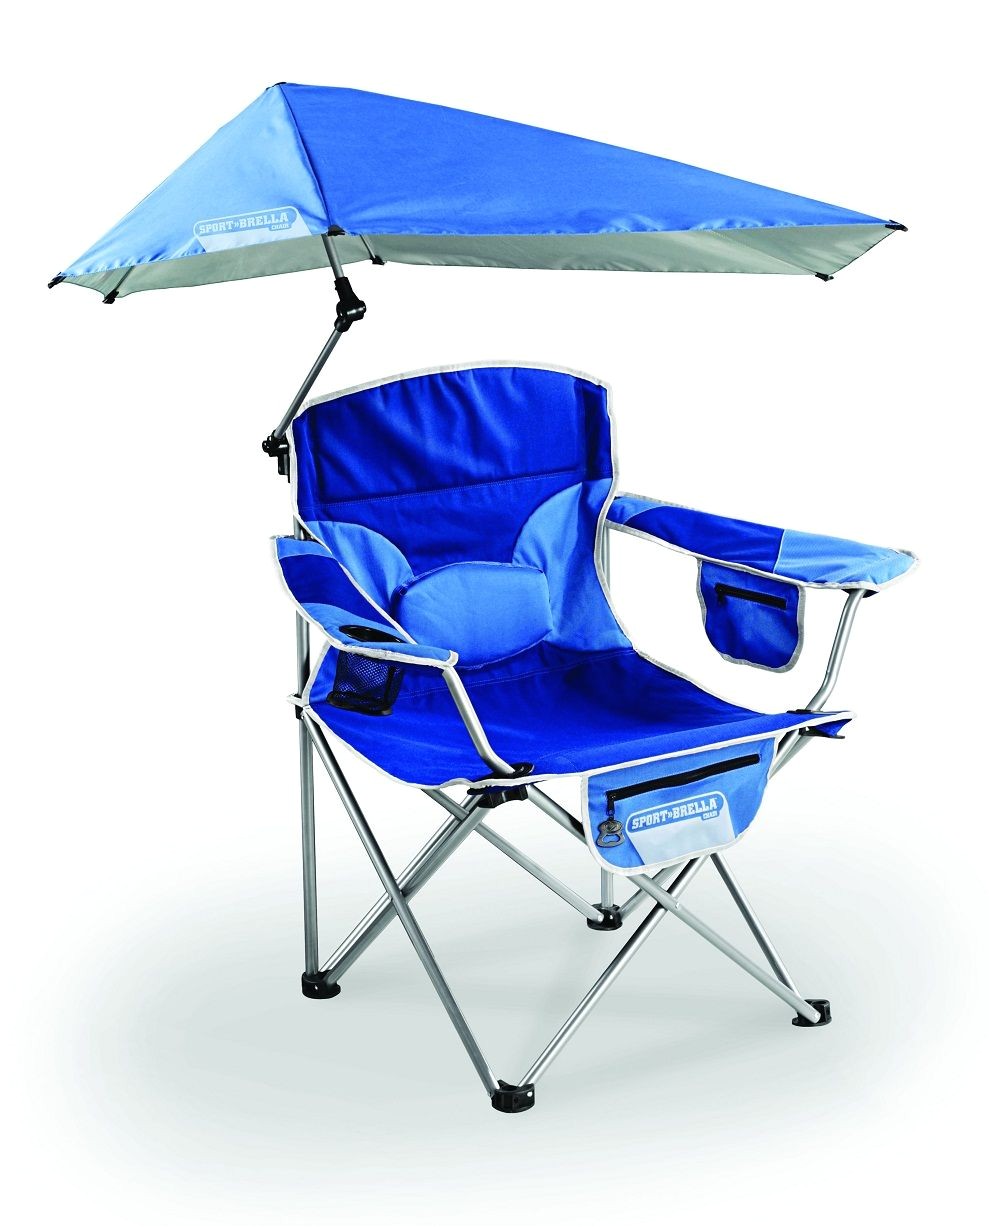 modern beach chair with umbrella attached beach theme